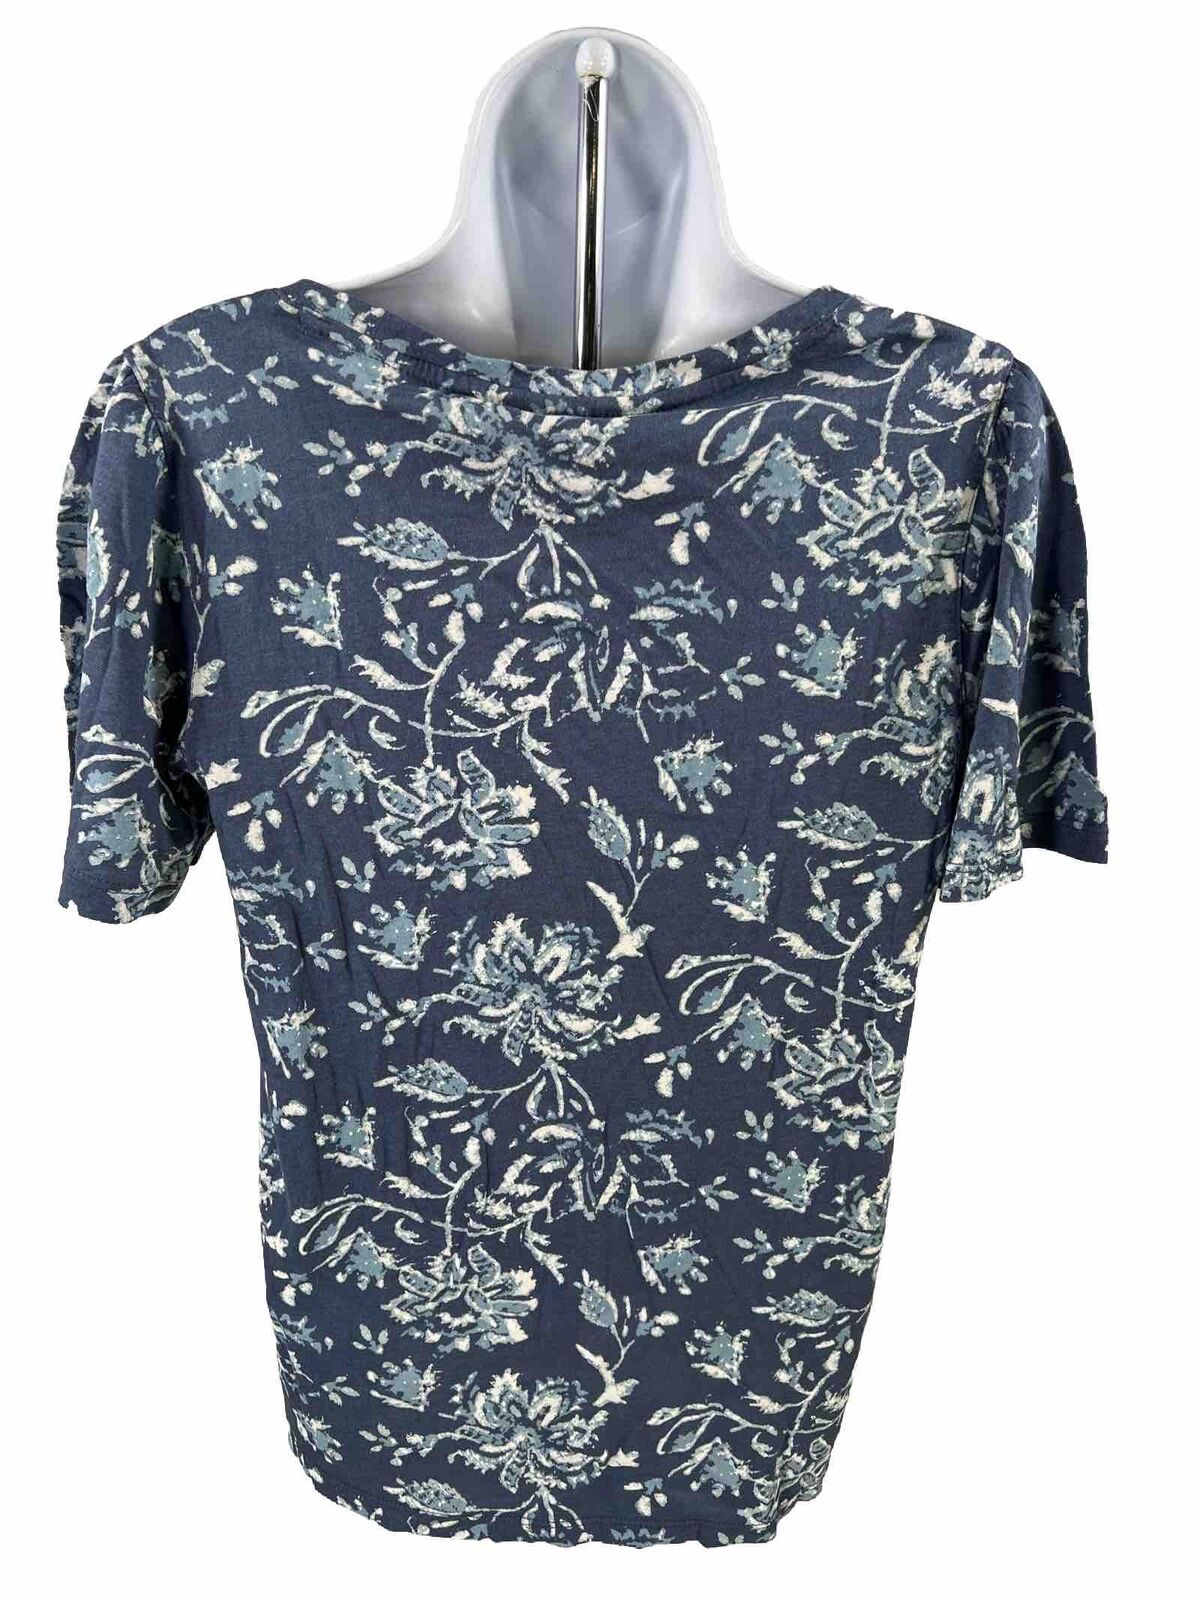 NEW Lucky Brand Women's Blue Floral Short Sleeve T-Shirt - M